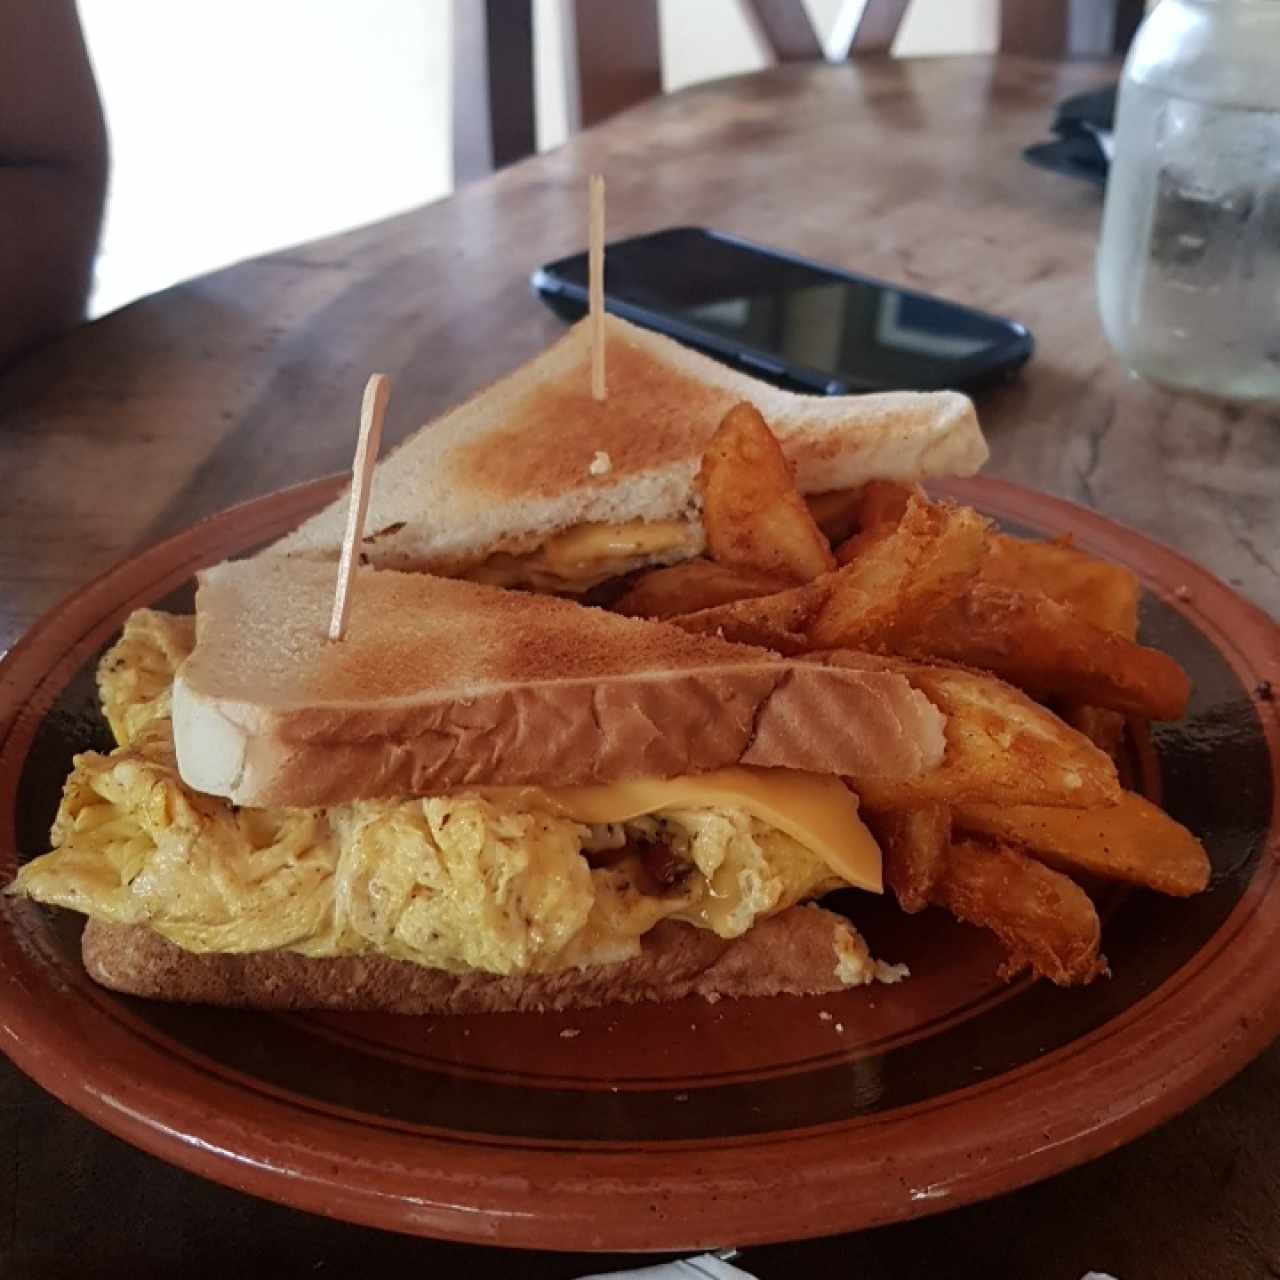 breakfast sandwich